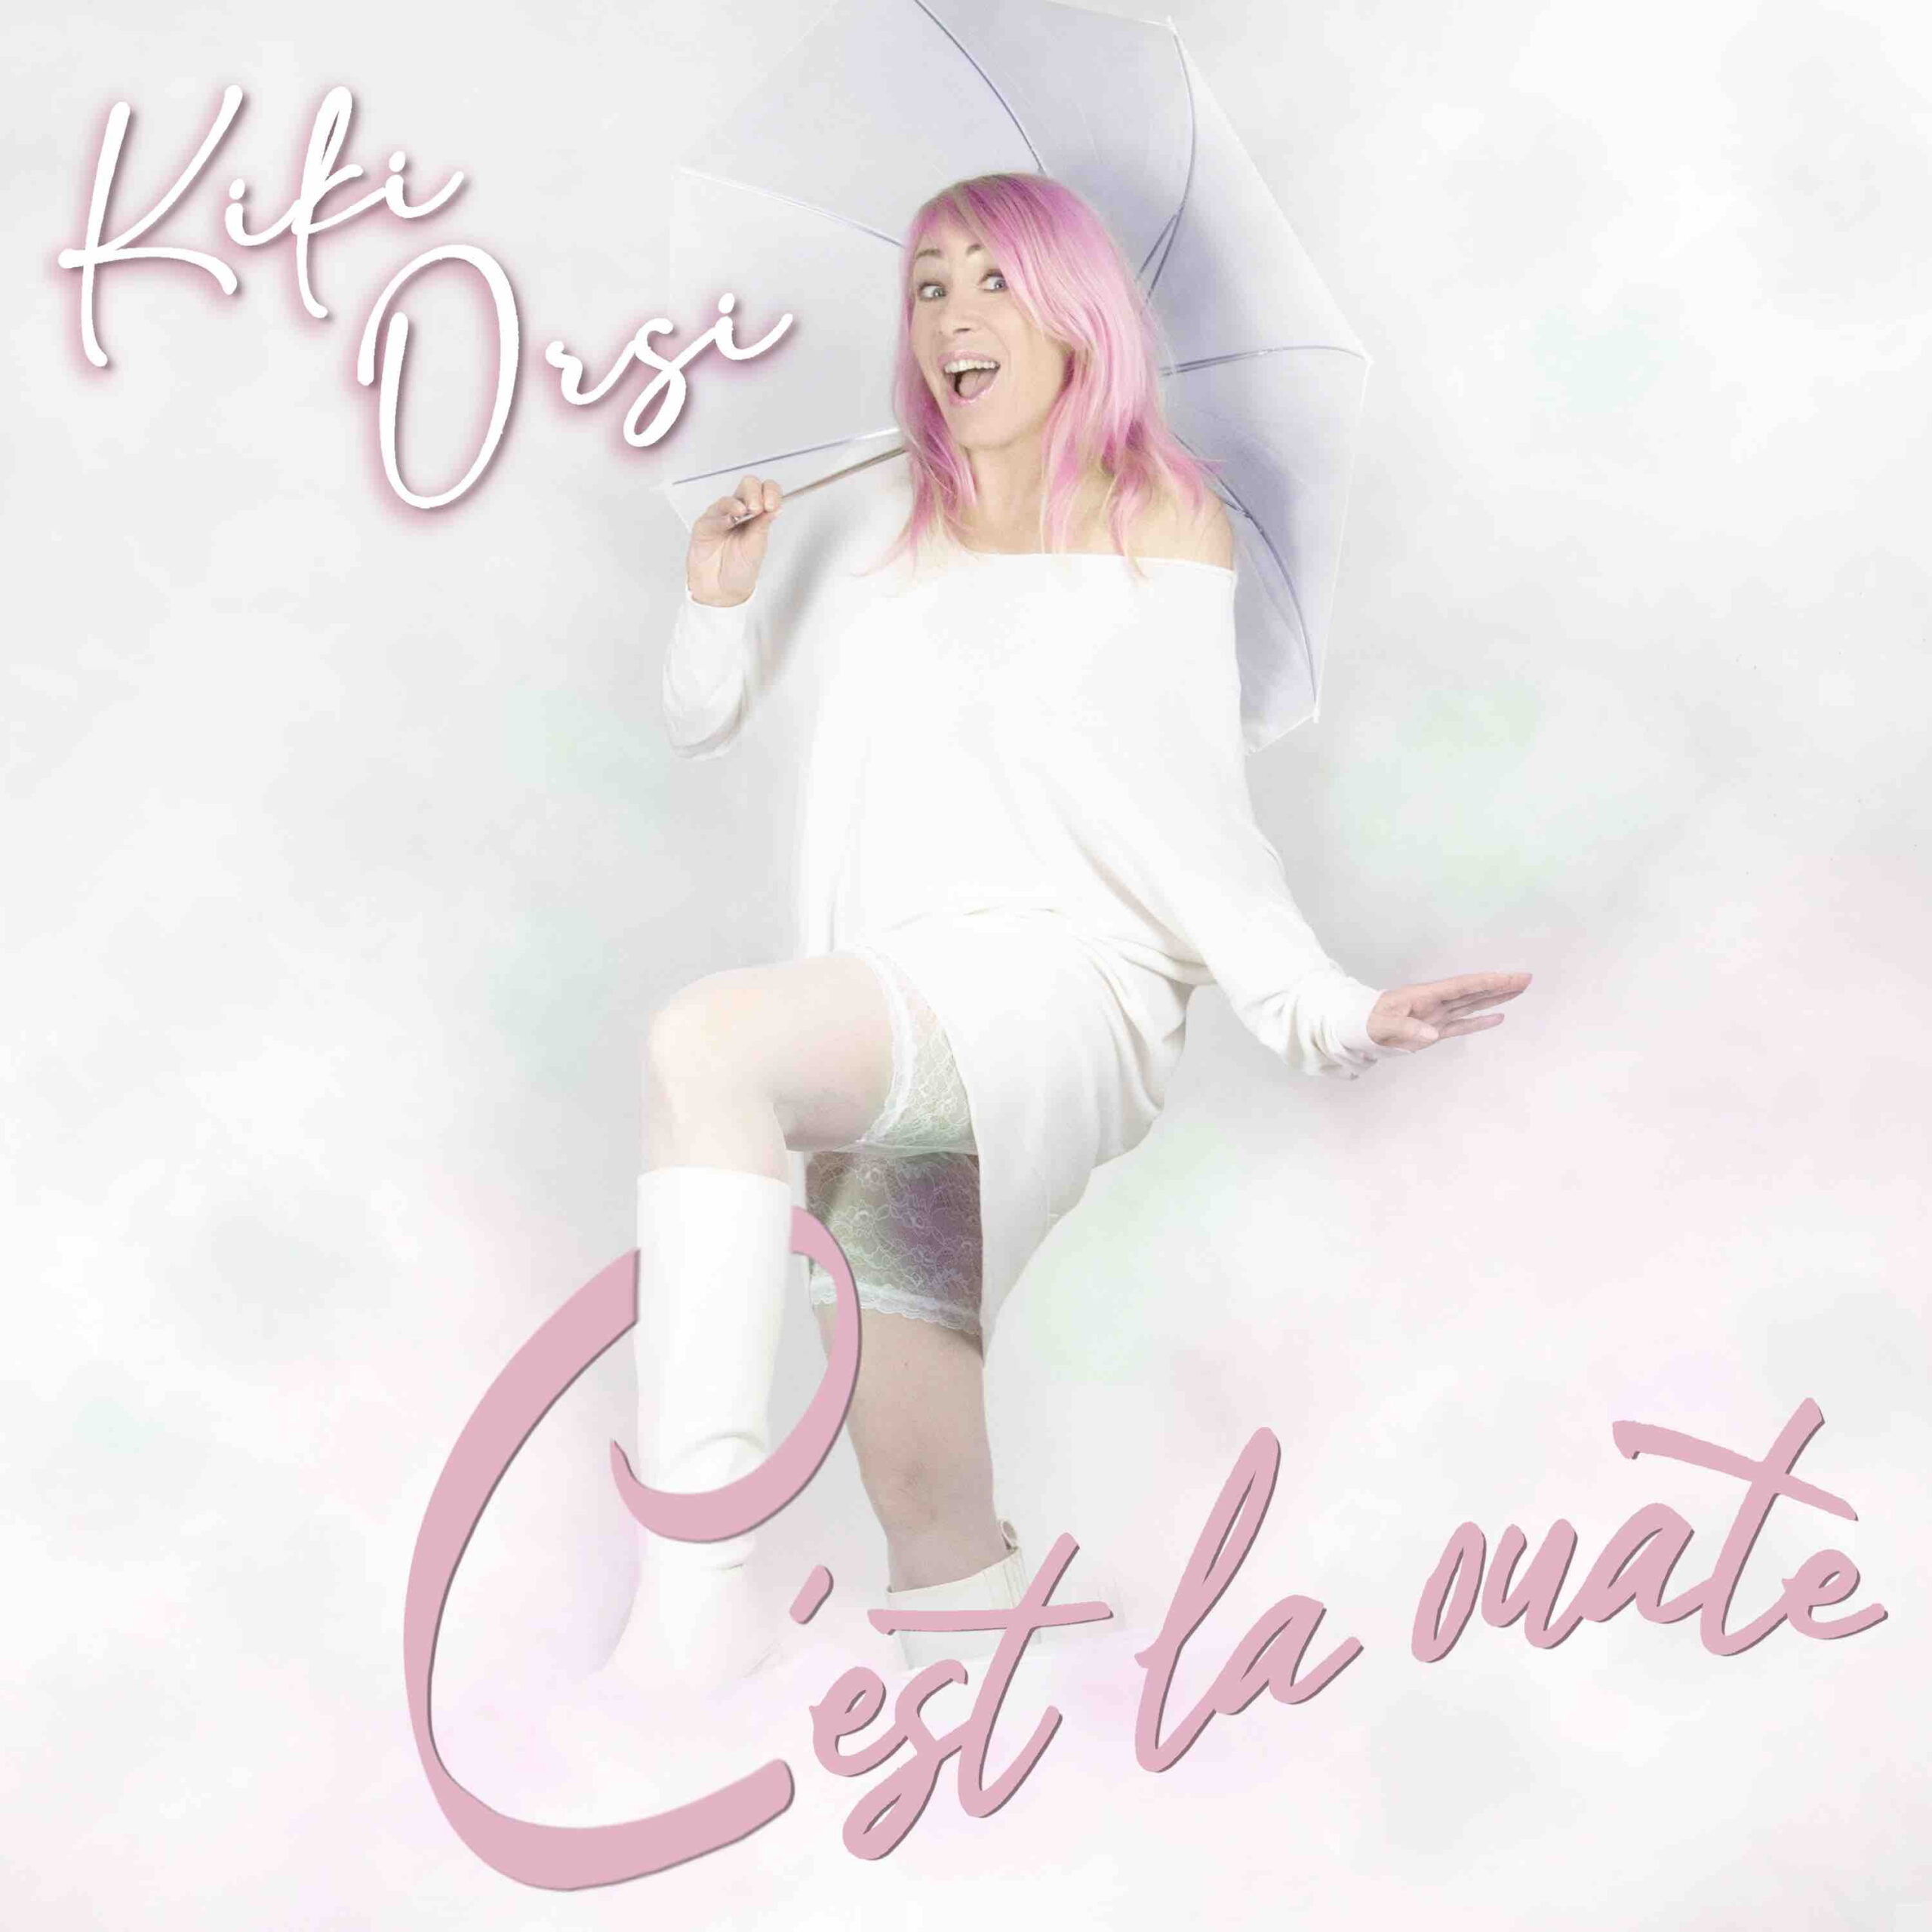 Kiki Orsi: Esce venerdì 21 giugno il nuovo singolo “C’est la osate”